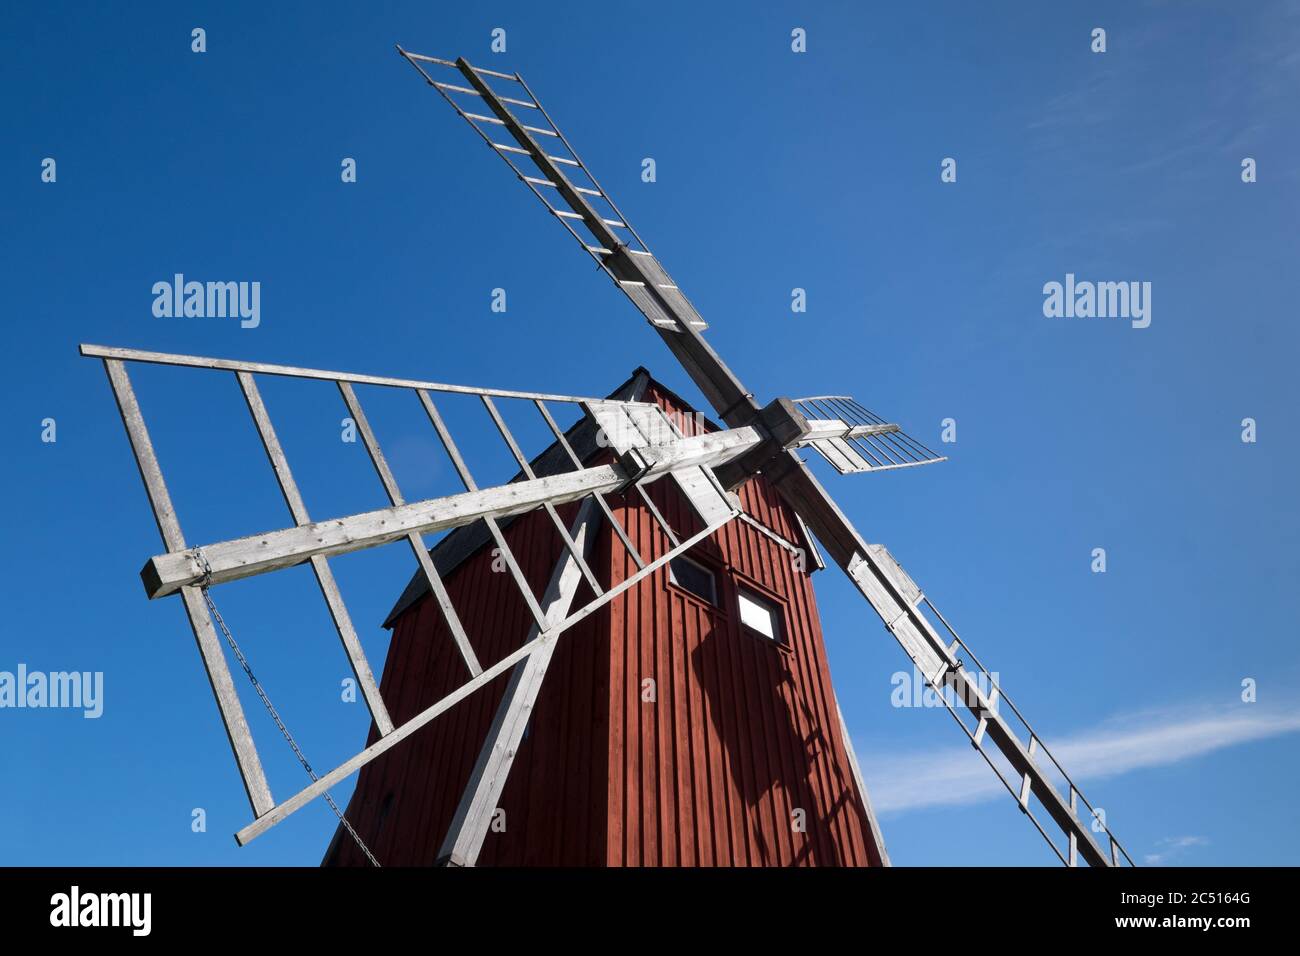 Détail de l'ancien moulin à vent traditionnel en bois, symbole de l'île Oland en Suède. Ciel bleu Banque D'Images